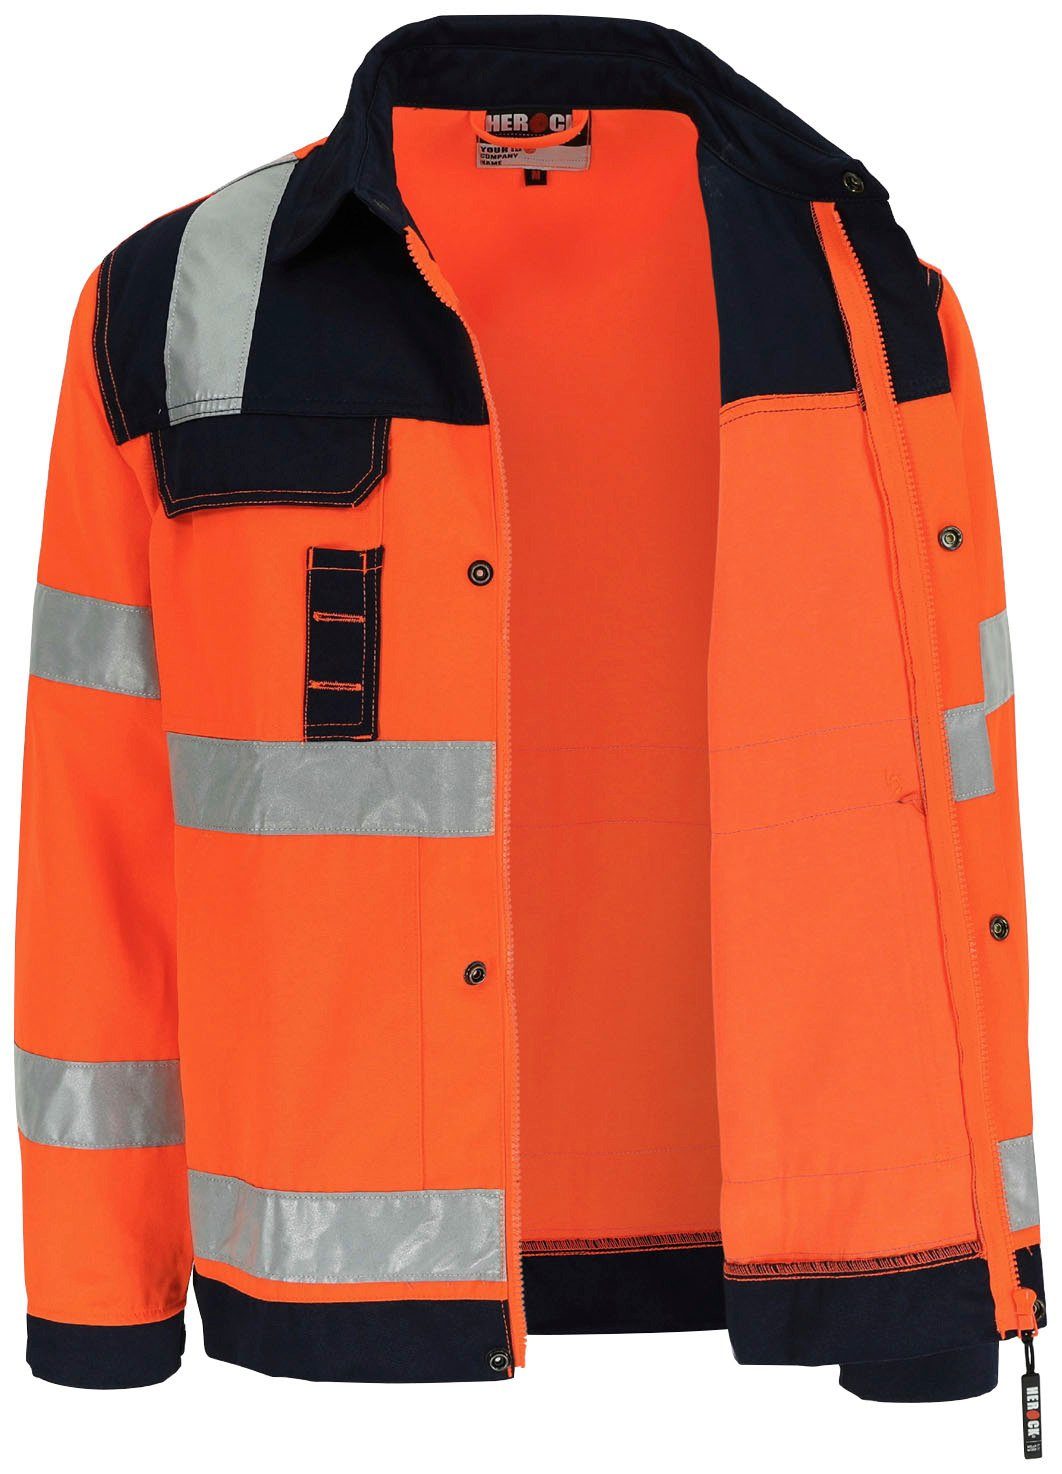 Arbeitsjacke Jacke Hochsichtbar orange Herock 5 5cm reflektierende Taschen, eintellbare Hochwertig, Hydros Bündchen, Bänder